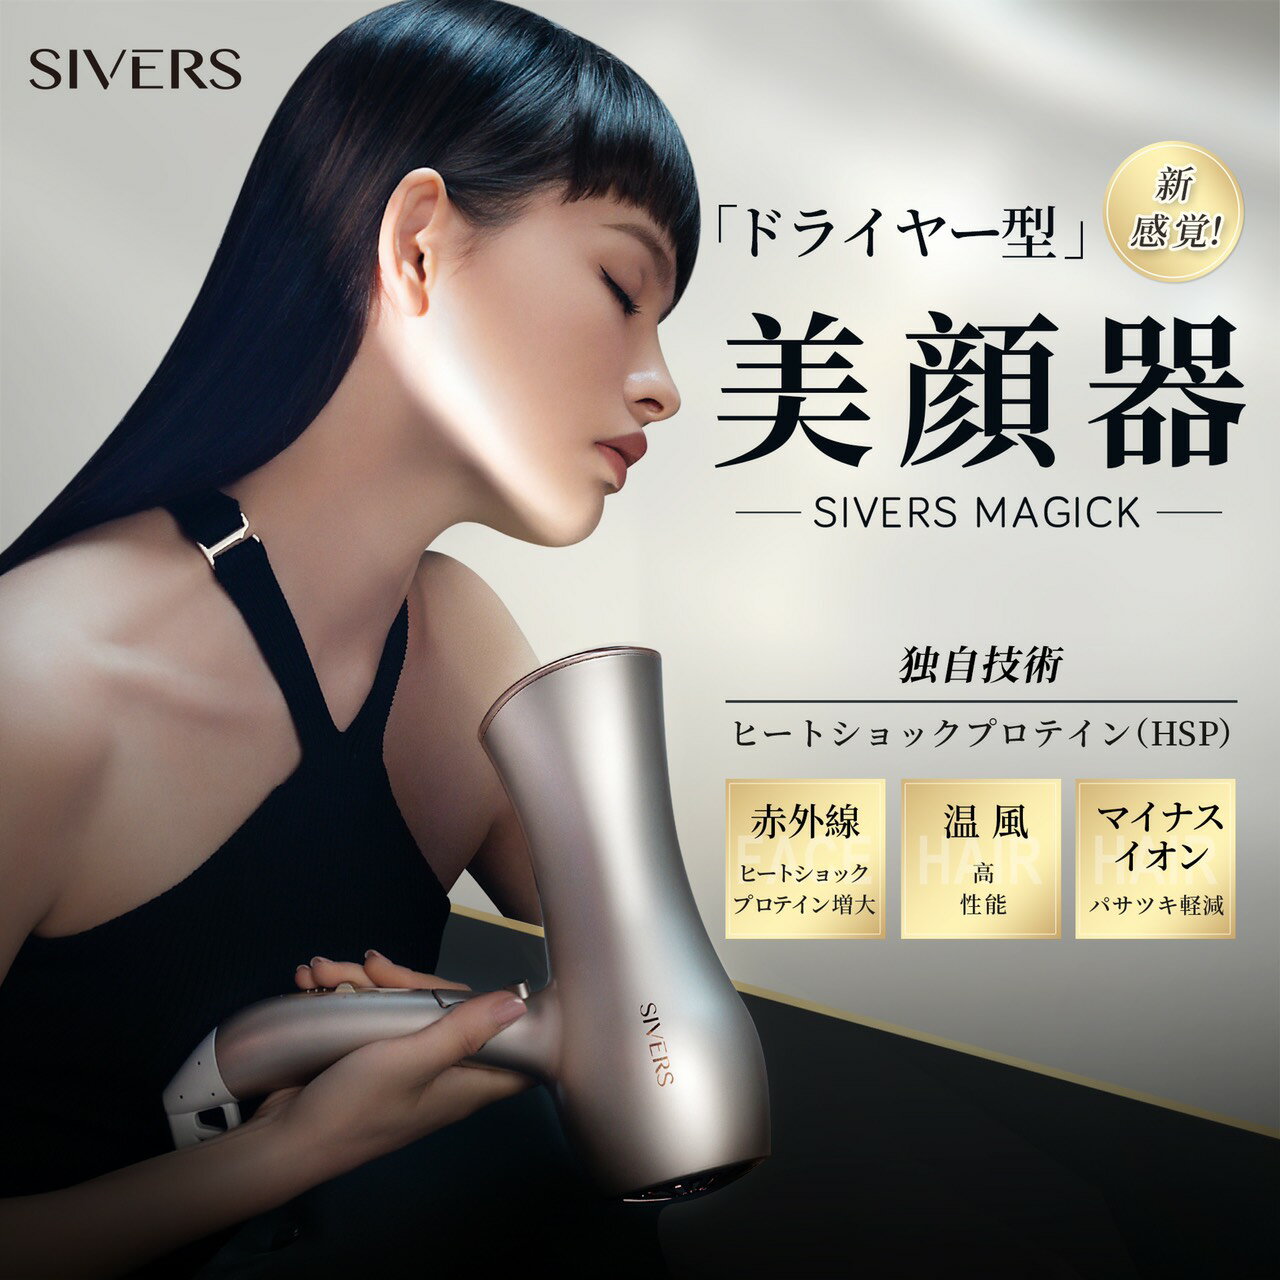 SIVERS Magick (シヴァーズ マジック) SV-M201ドライヤー型 美顔器 送料無料